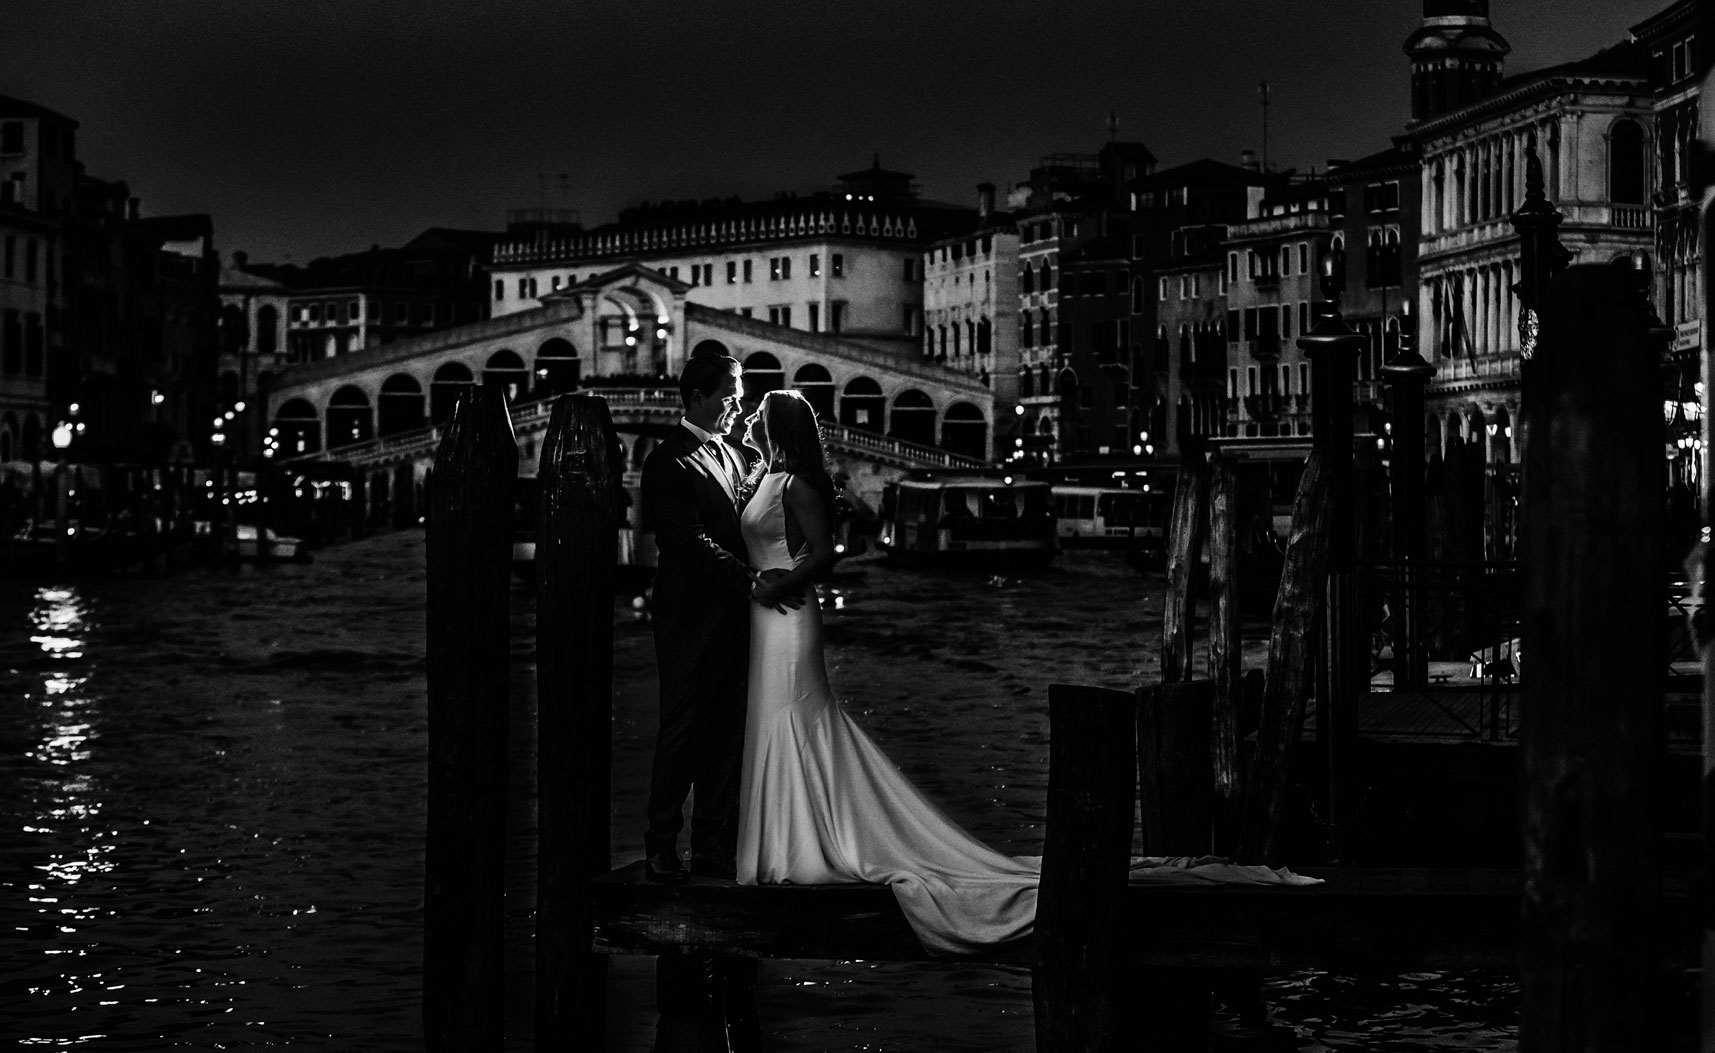 Post boda por Ginés López fotógrafos de boda en Murcía, en los muelles de puente Rialto Venecia.